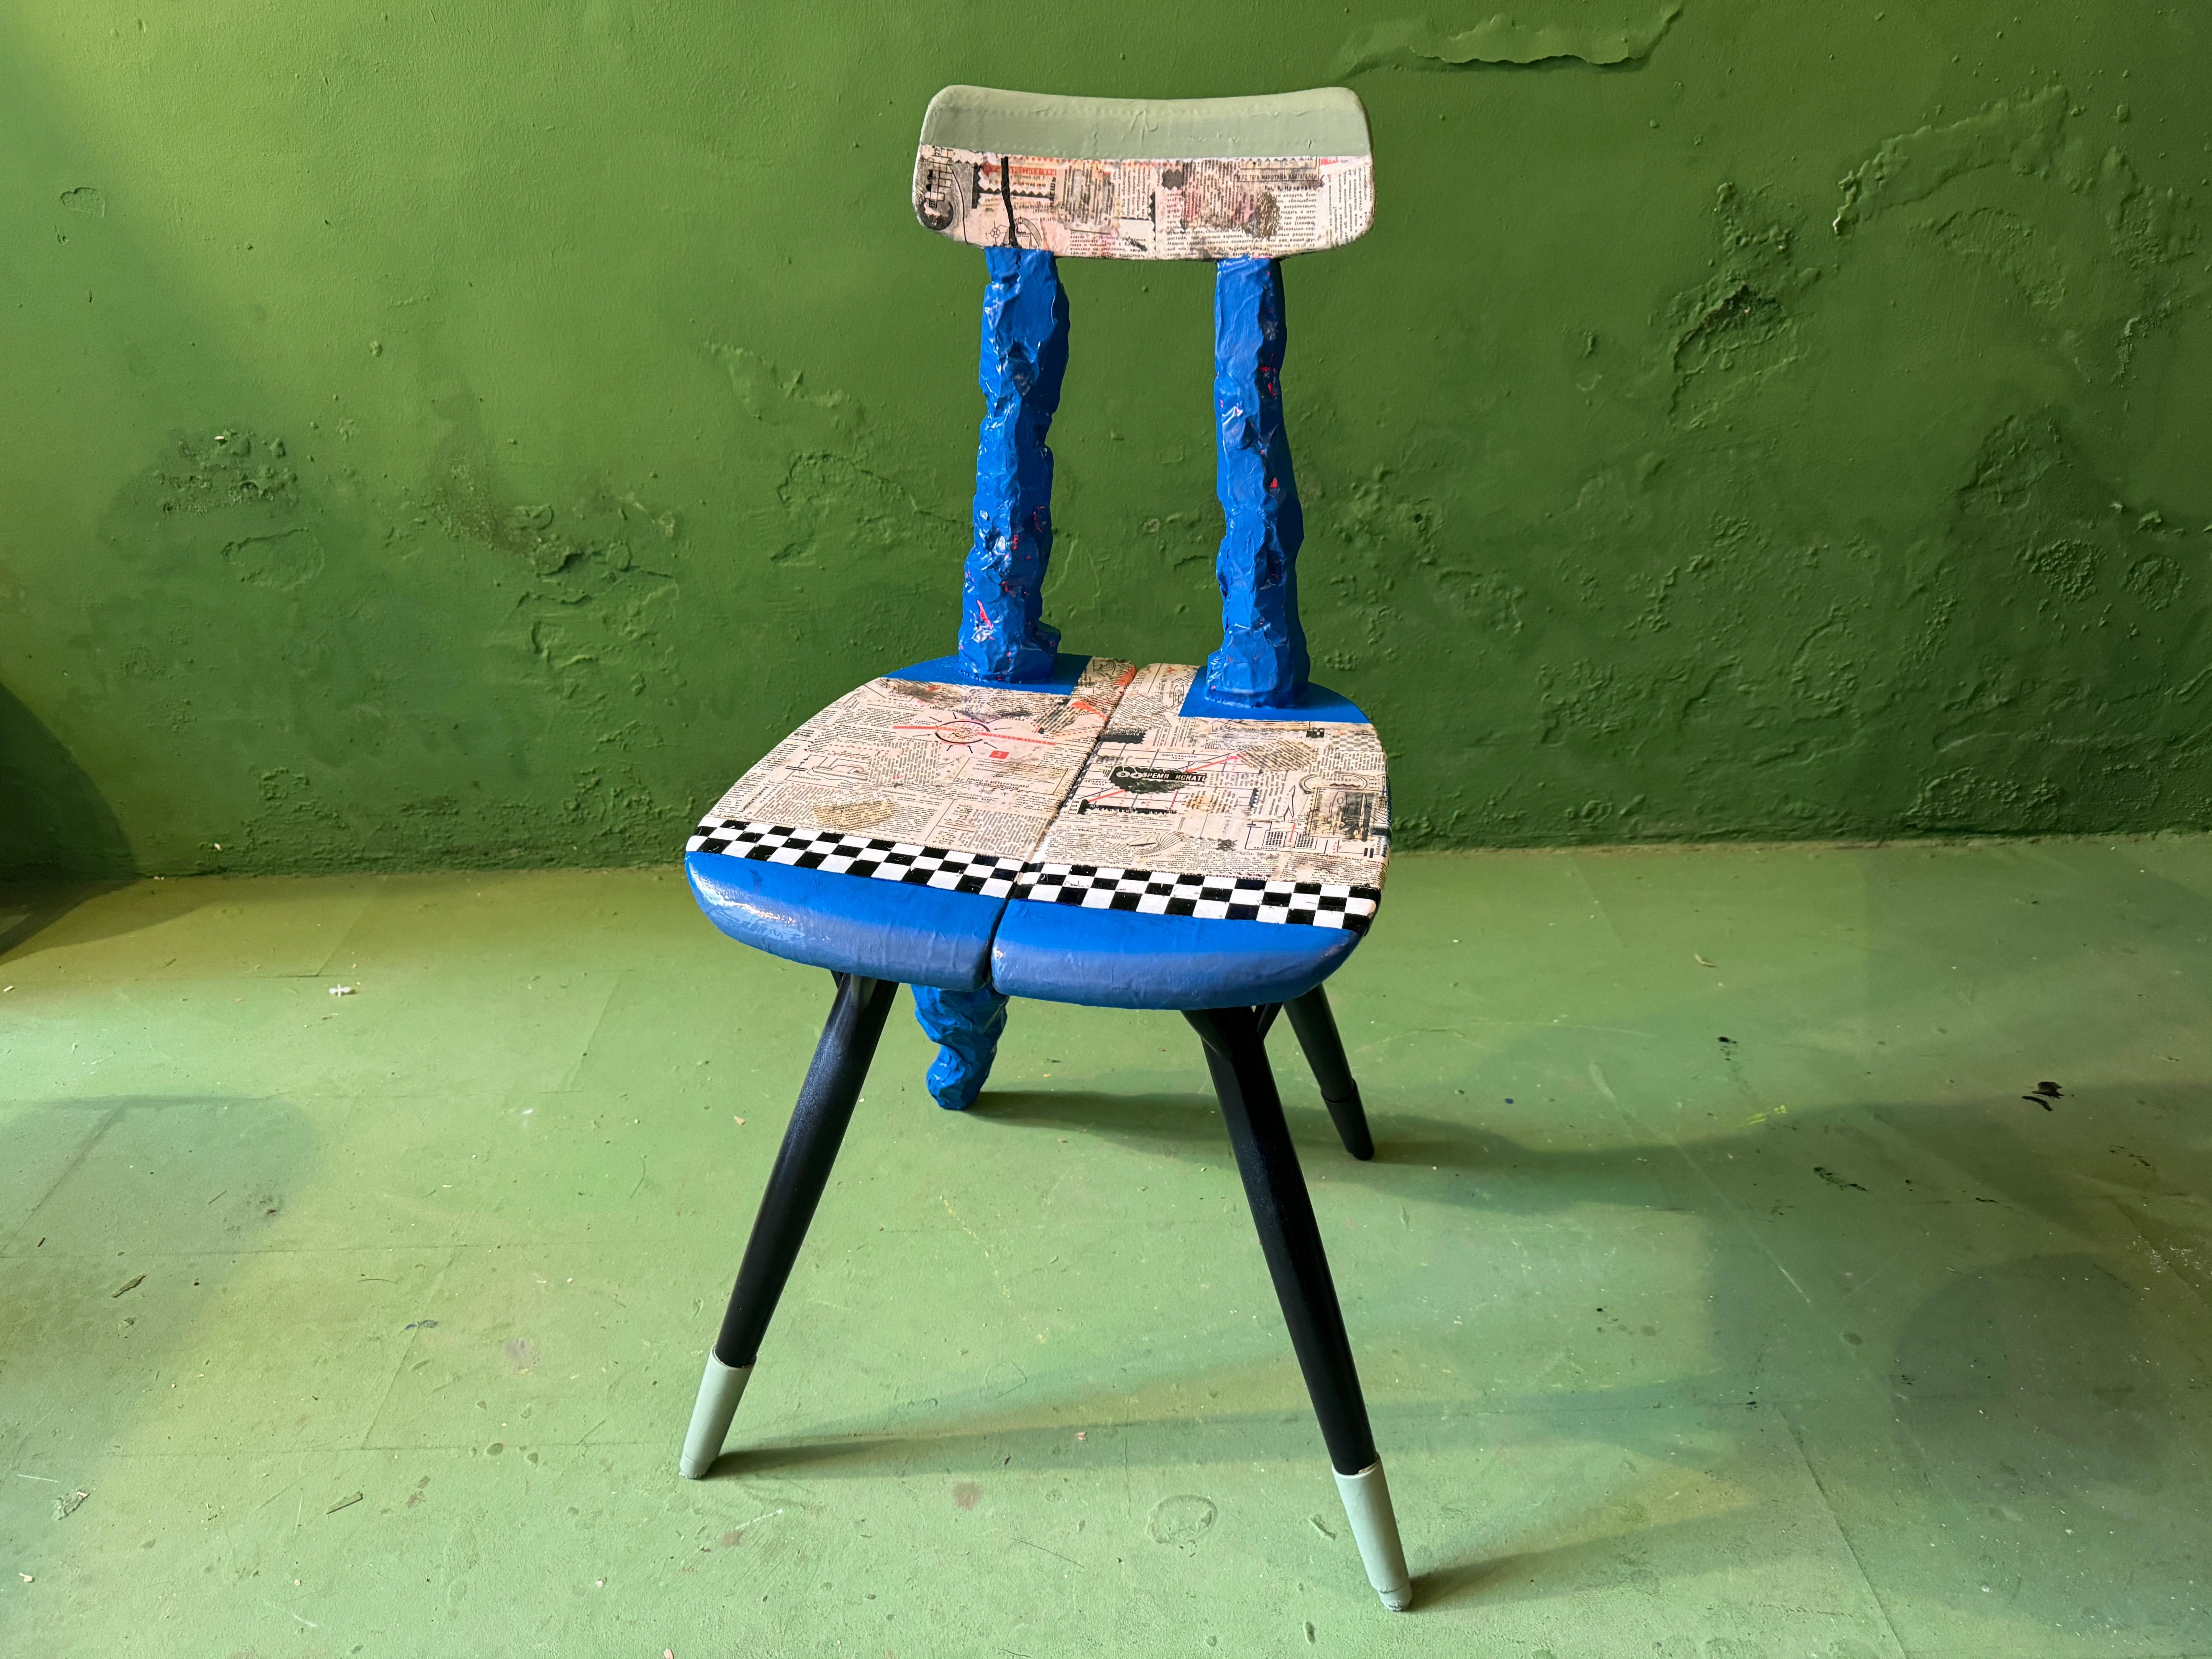 La célèbre chaise d'Ynve Ekströms revisitée à un niveau artistique jamais atteint auparavant. Papier mâché, laque, couleur et vieux journal russe

Tabouret/table en teck, doré, peint, laqué en hogh gloss, sculpté et dossier ajouté. Titre original